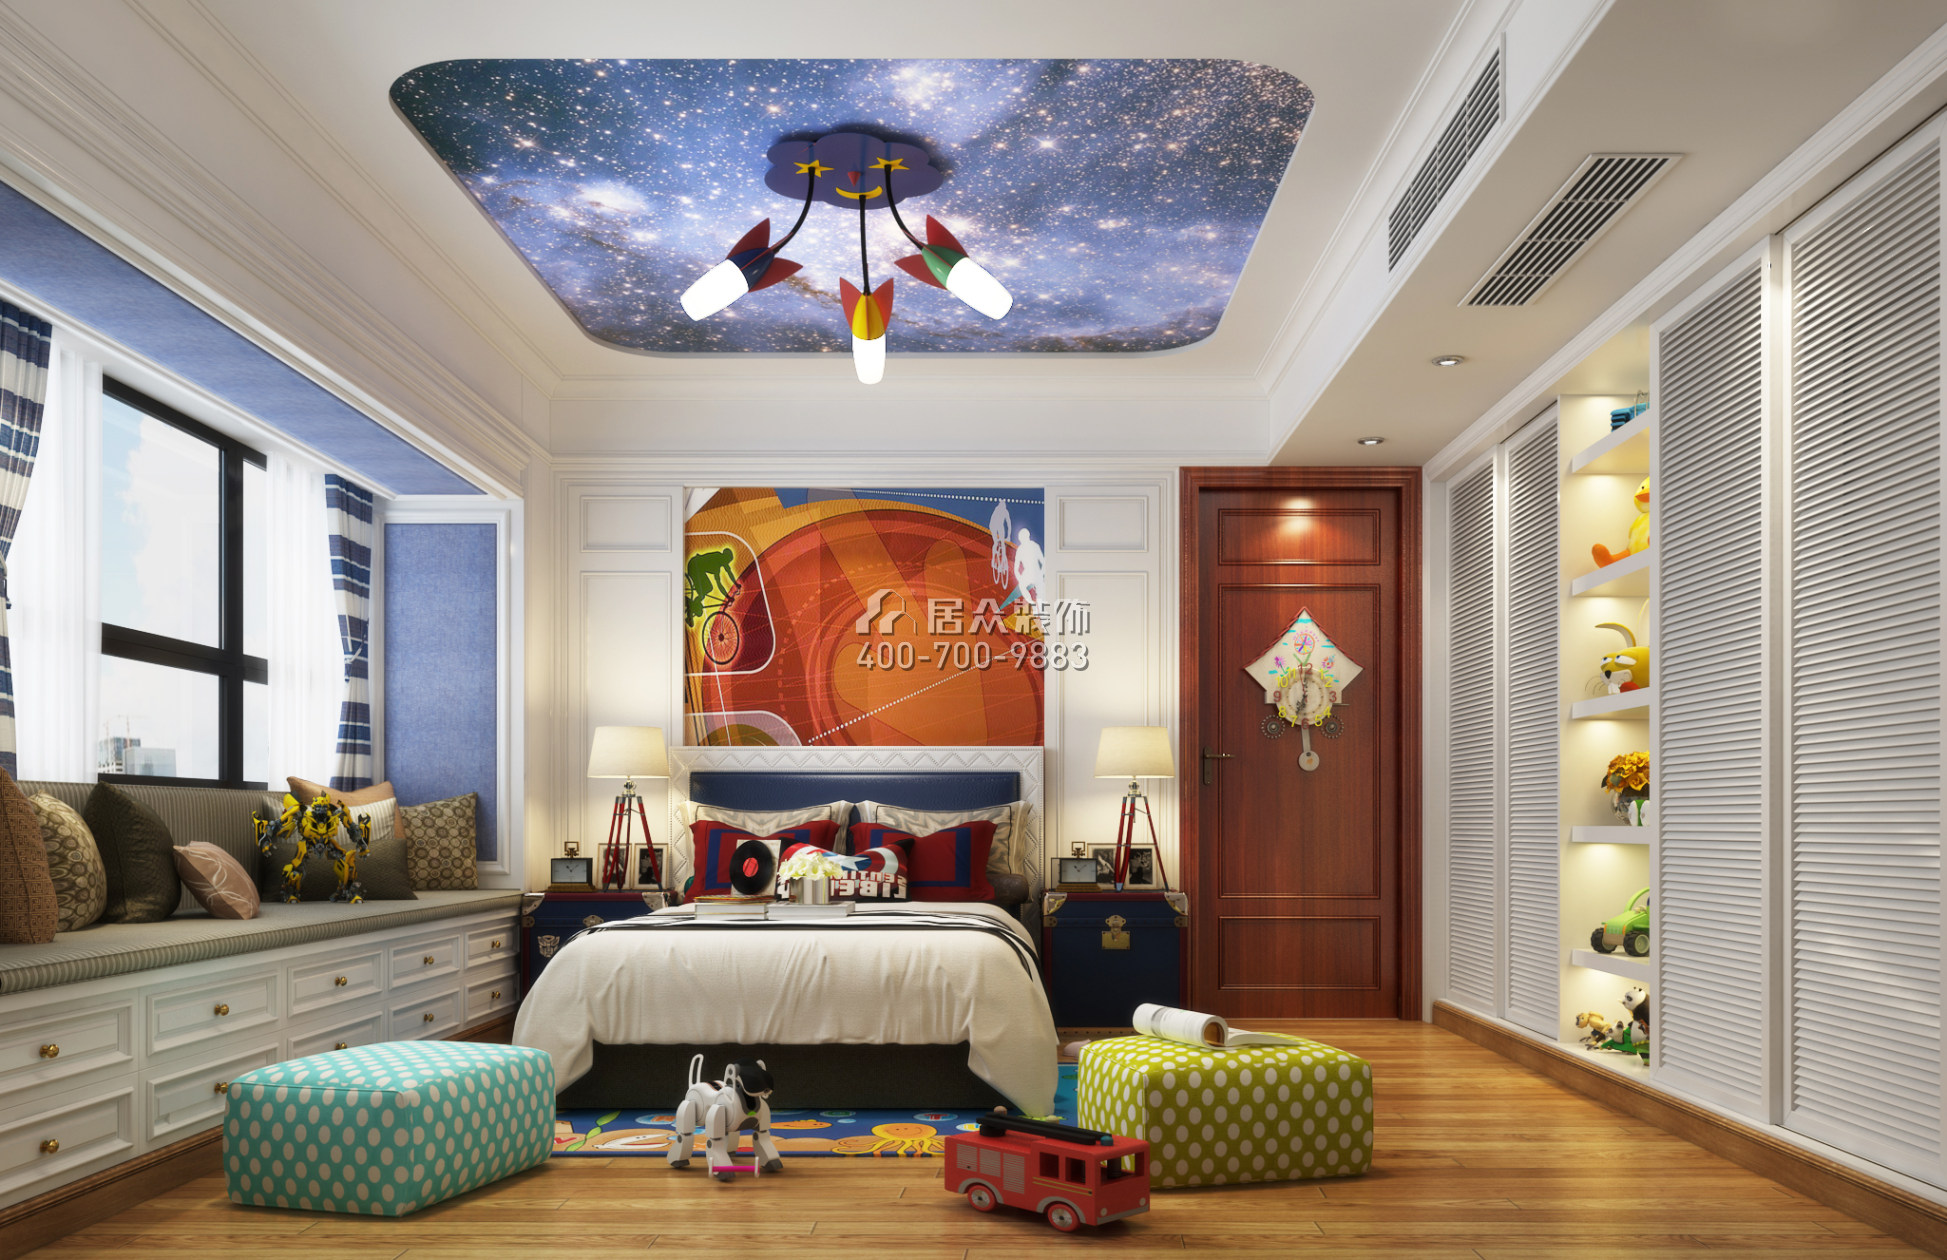 幸福世家270平方米中式風格復式戶型臥室裝修效果圖